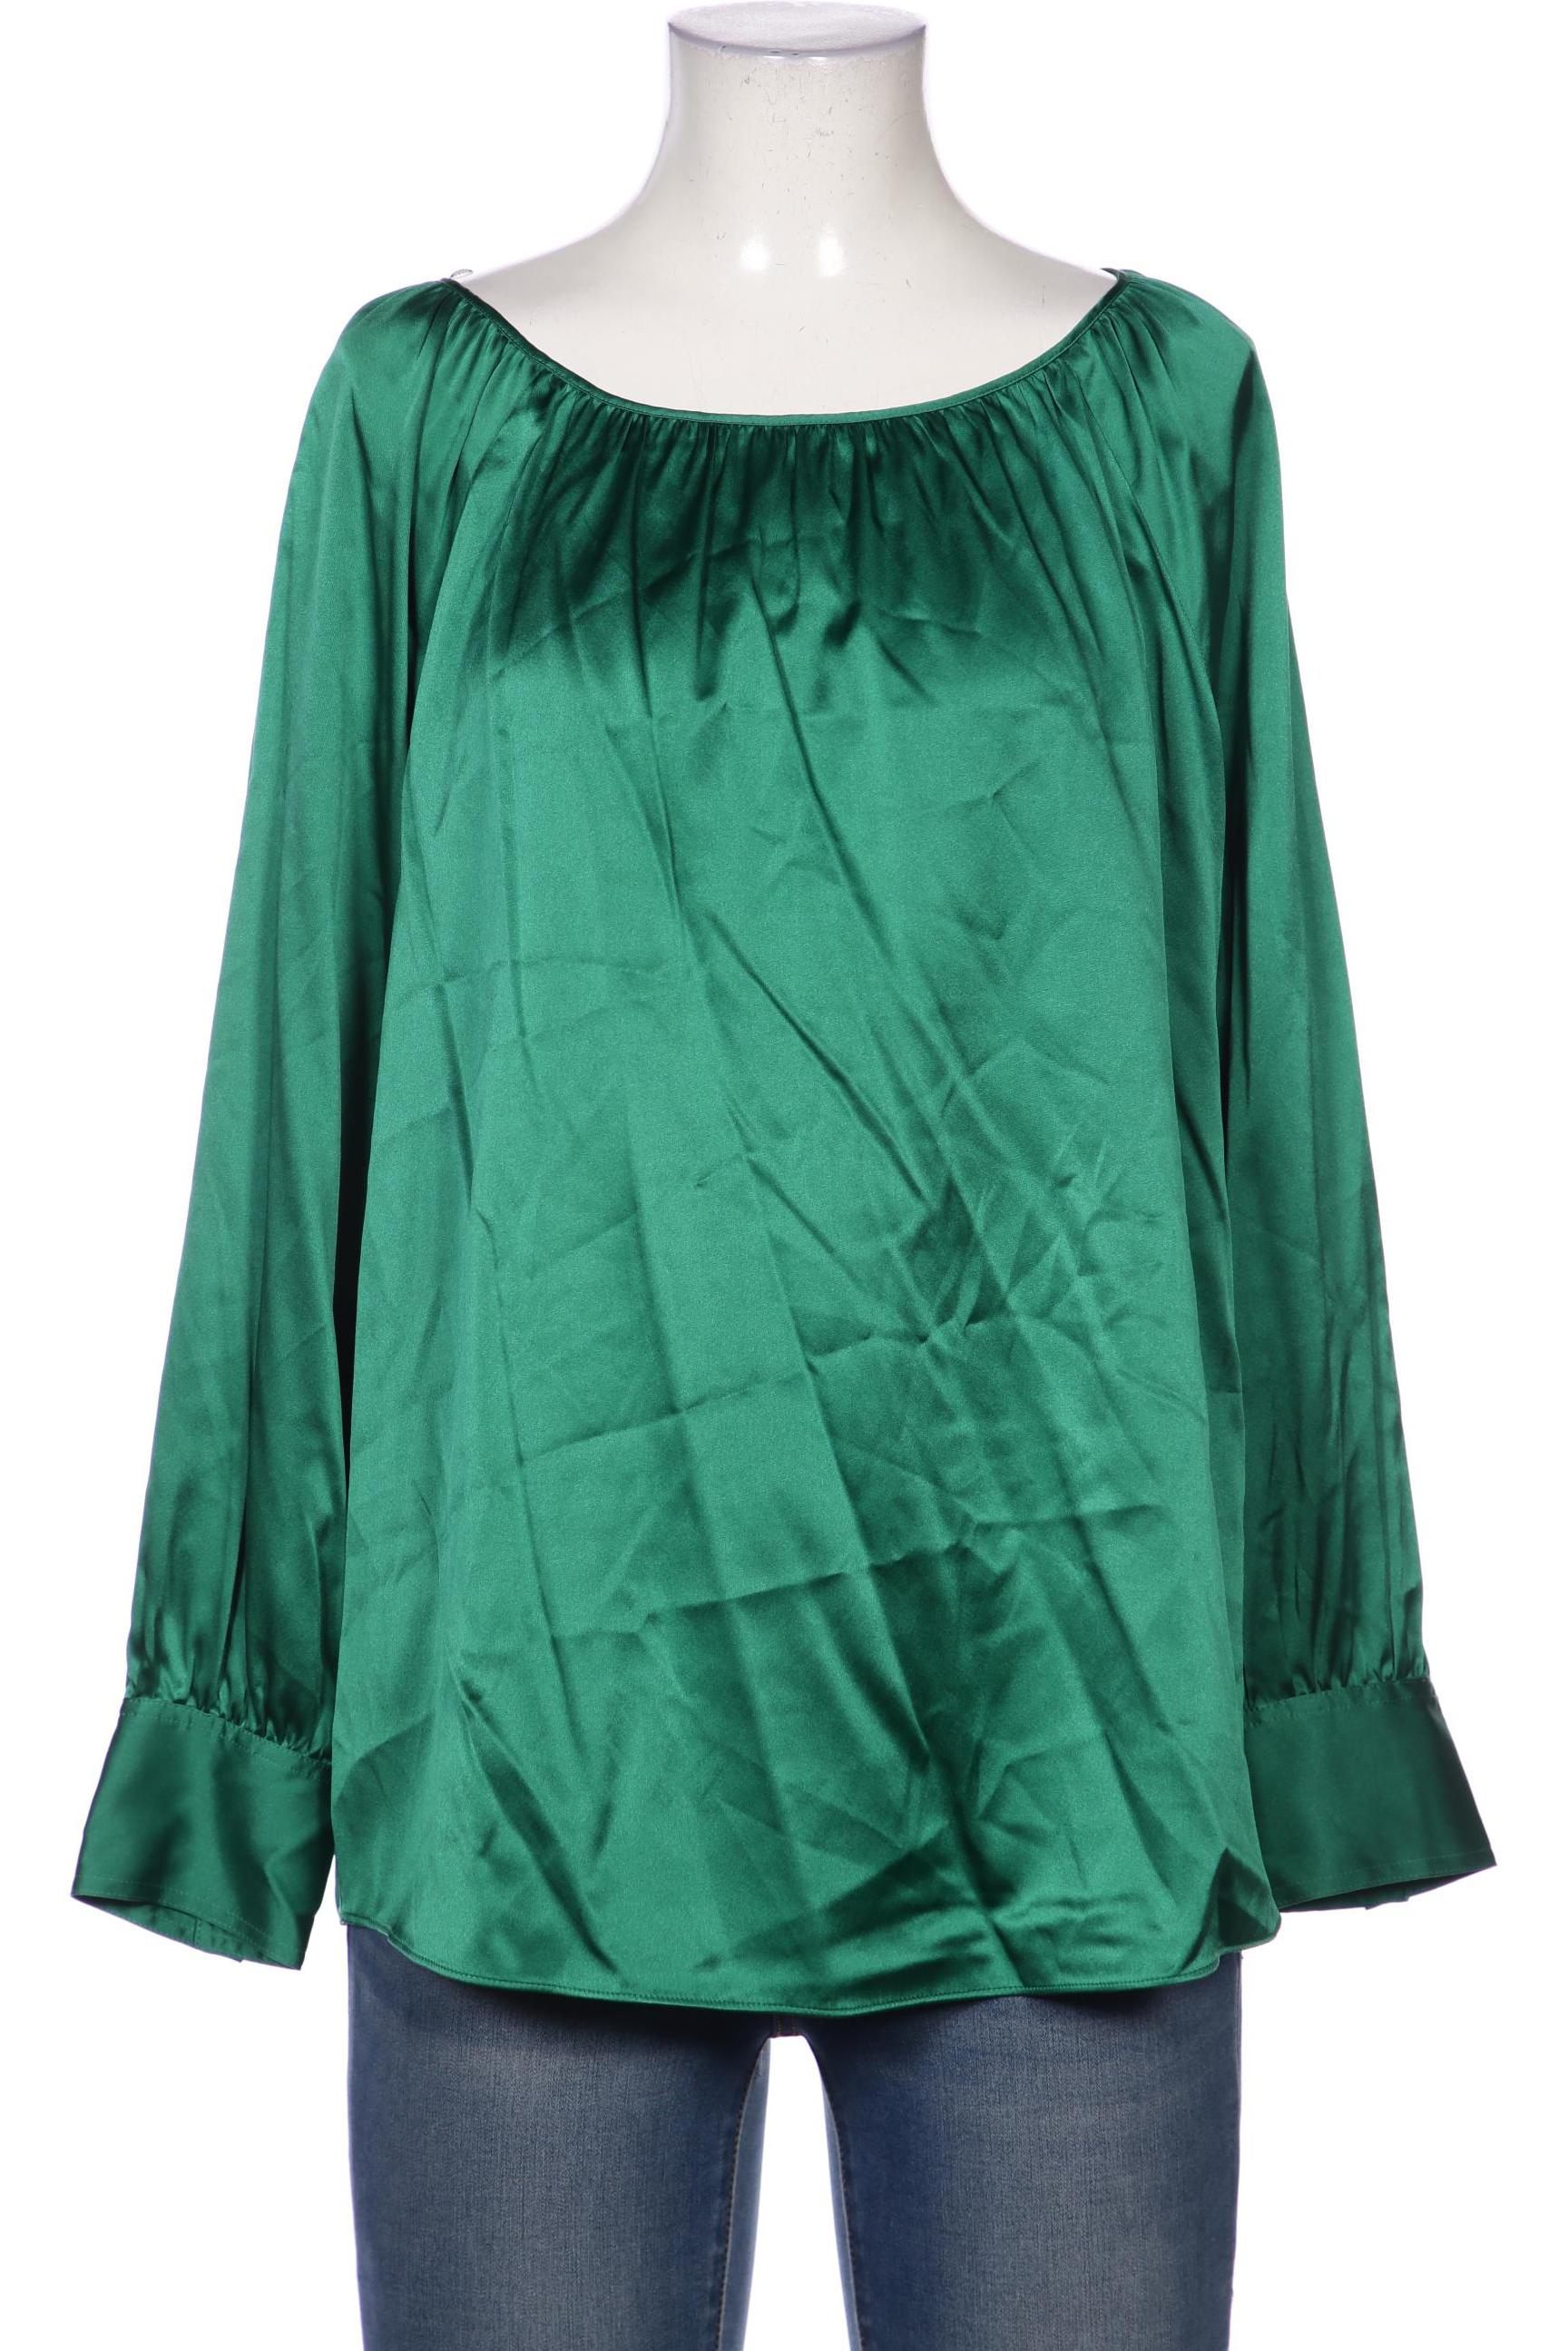 Herzensangelegenheit Damen Bluse, grün von herzensangelegenheit